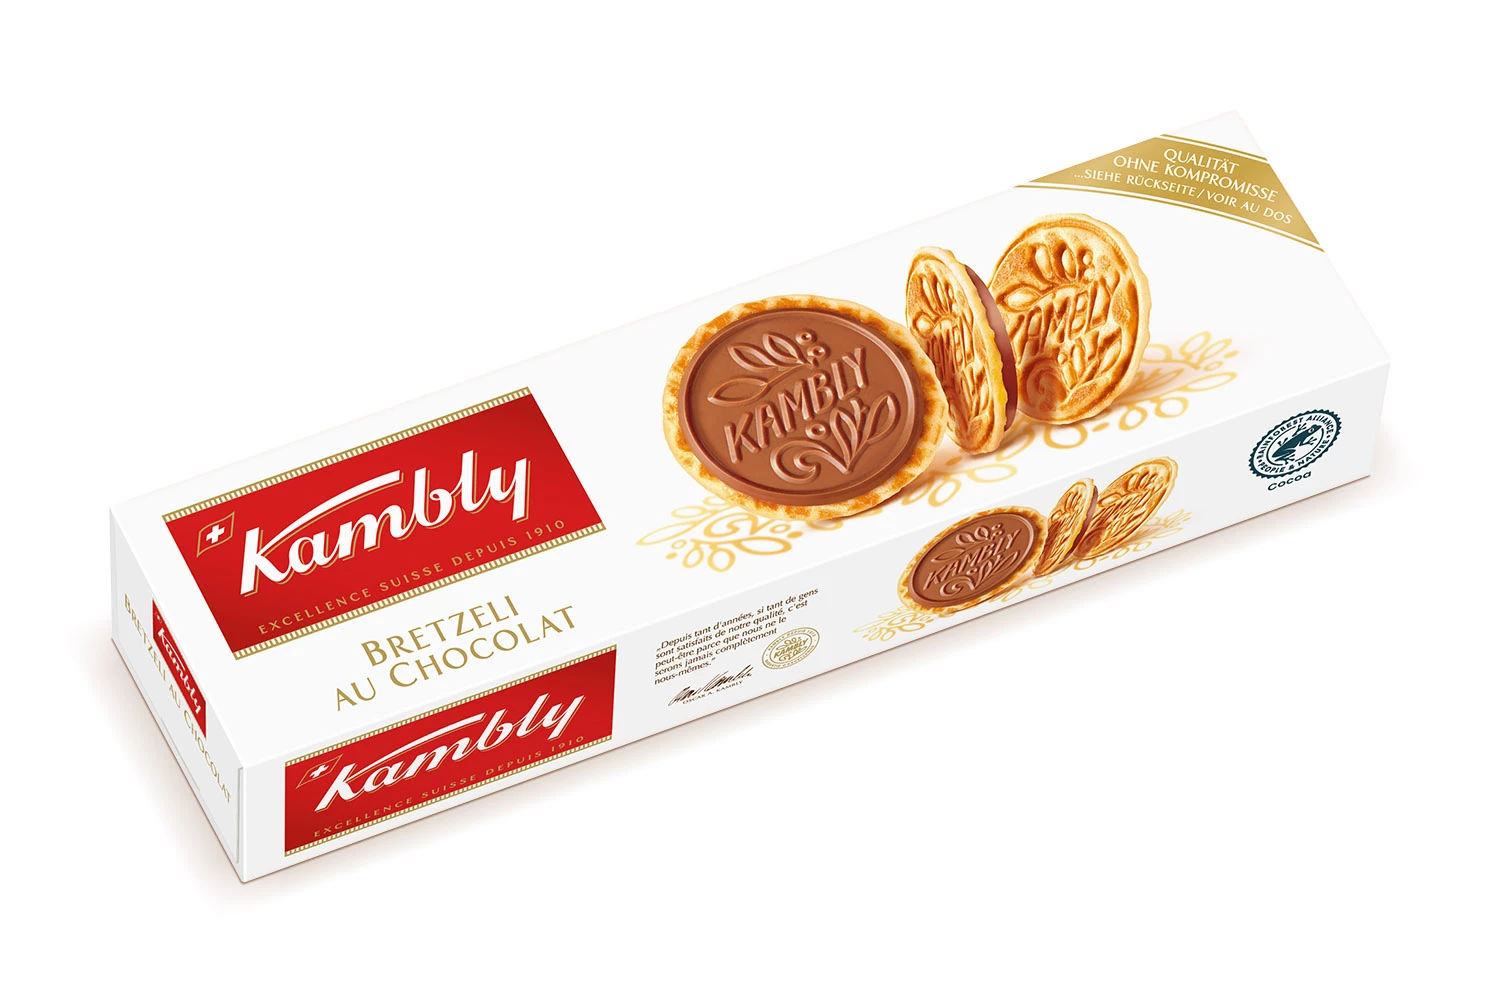 巧克力椒盐卷饼 100g - KAMBLY